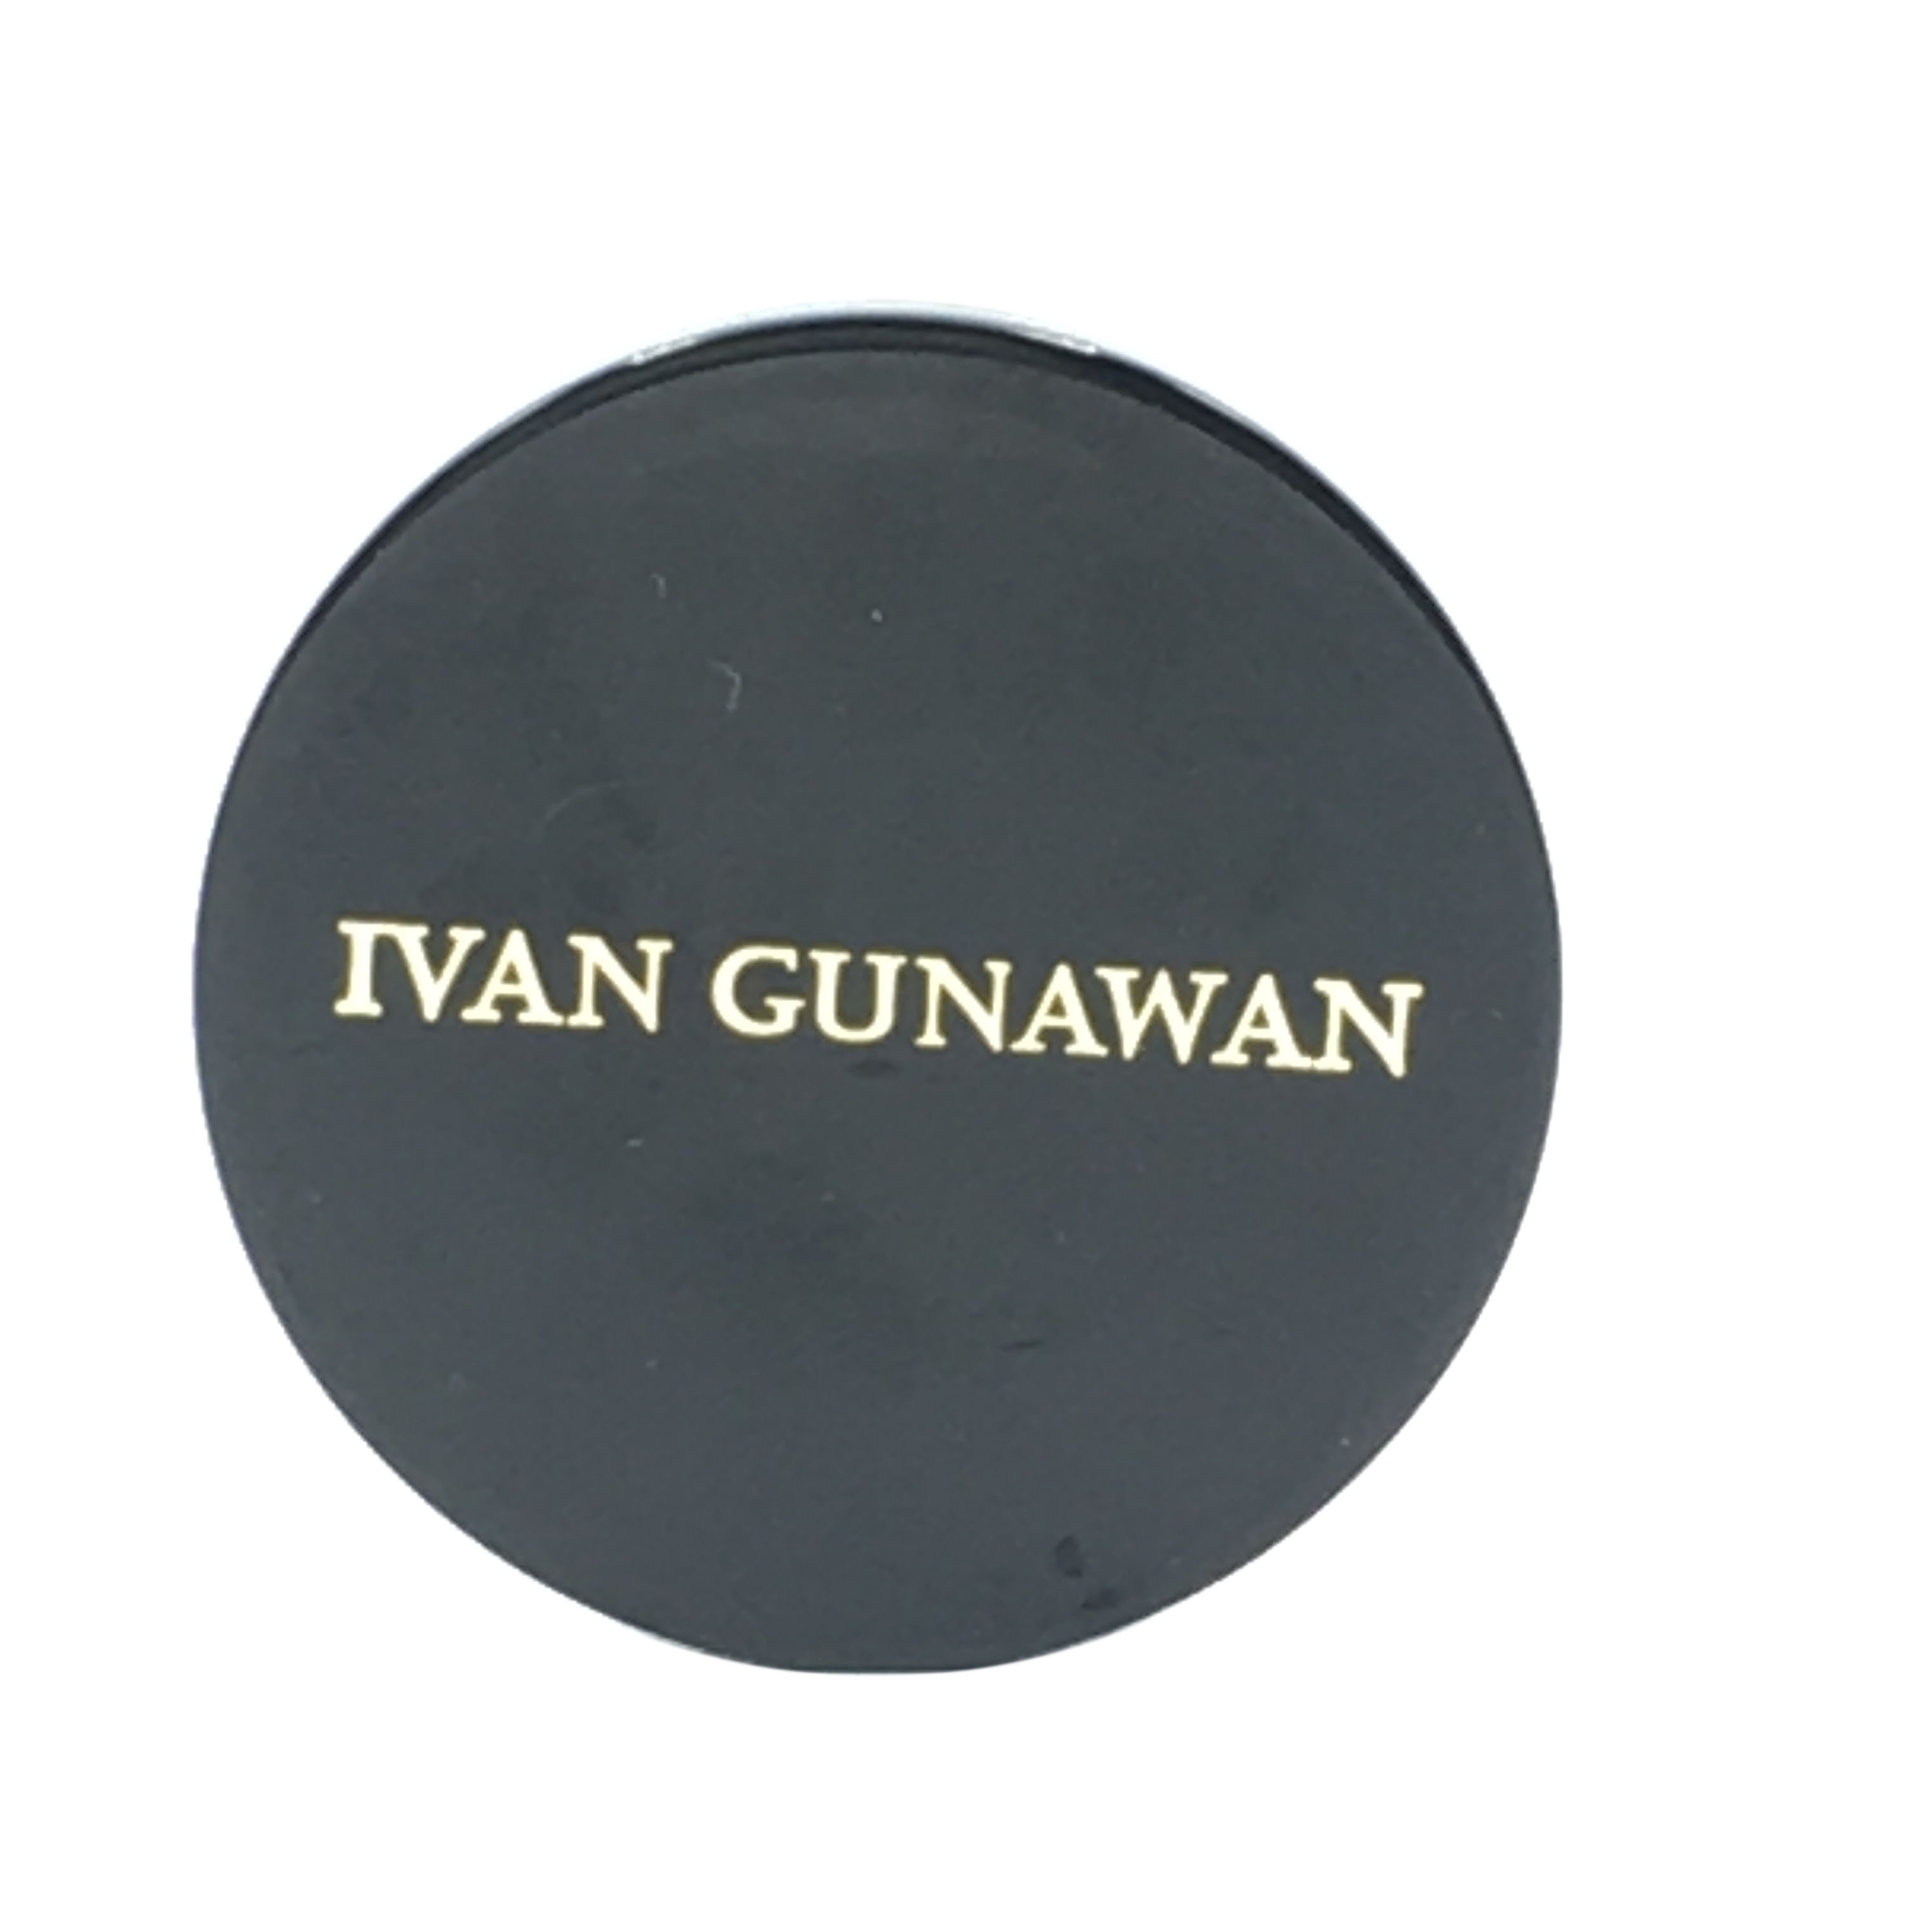 Ivan Gunawan By Inez Alysia Brows Desert Belend Eyes